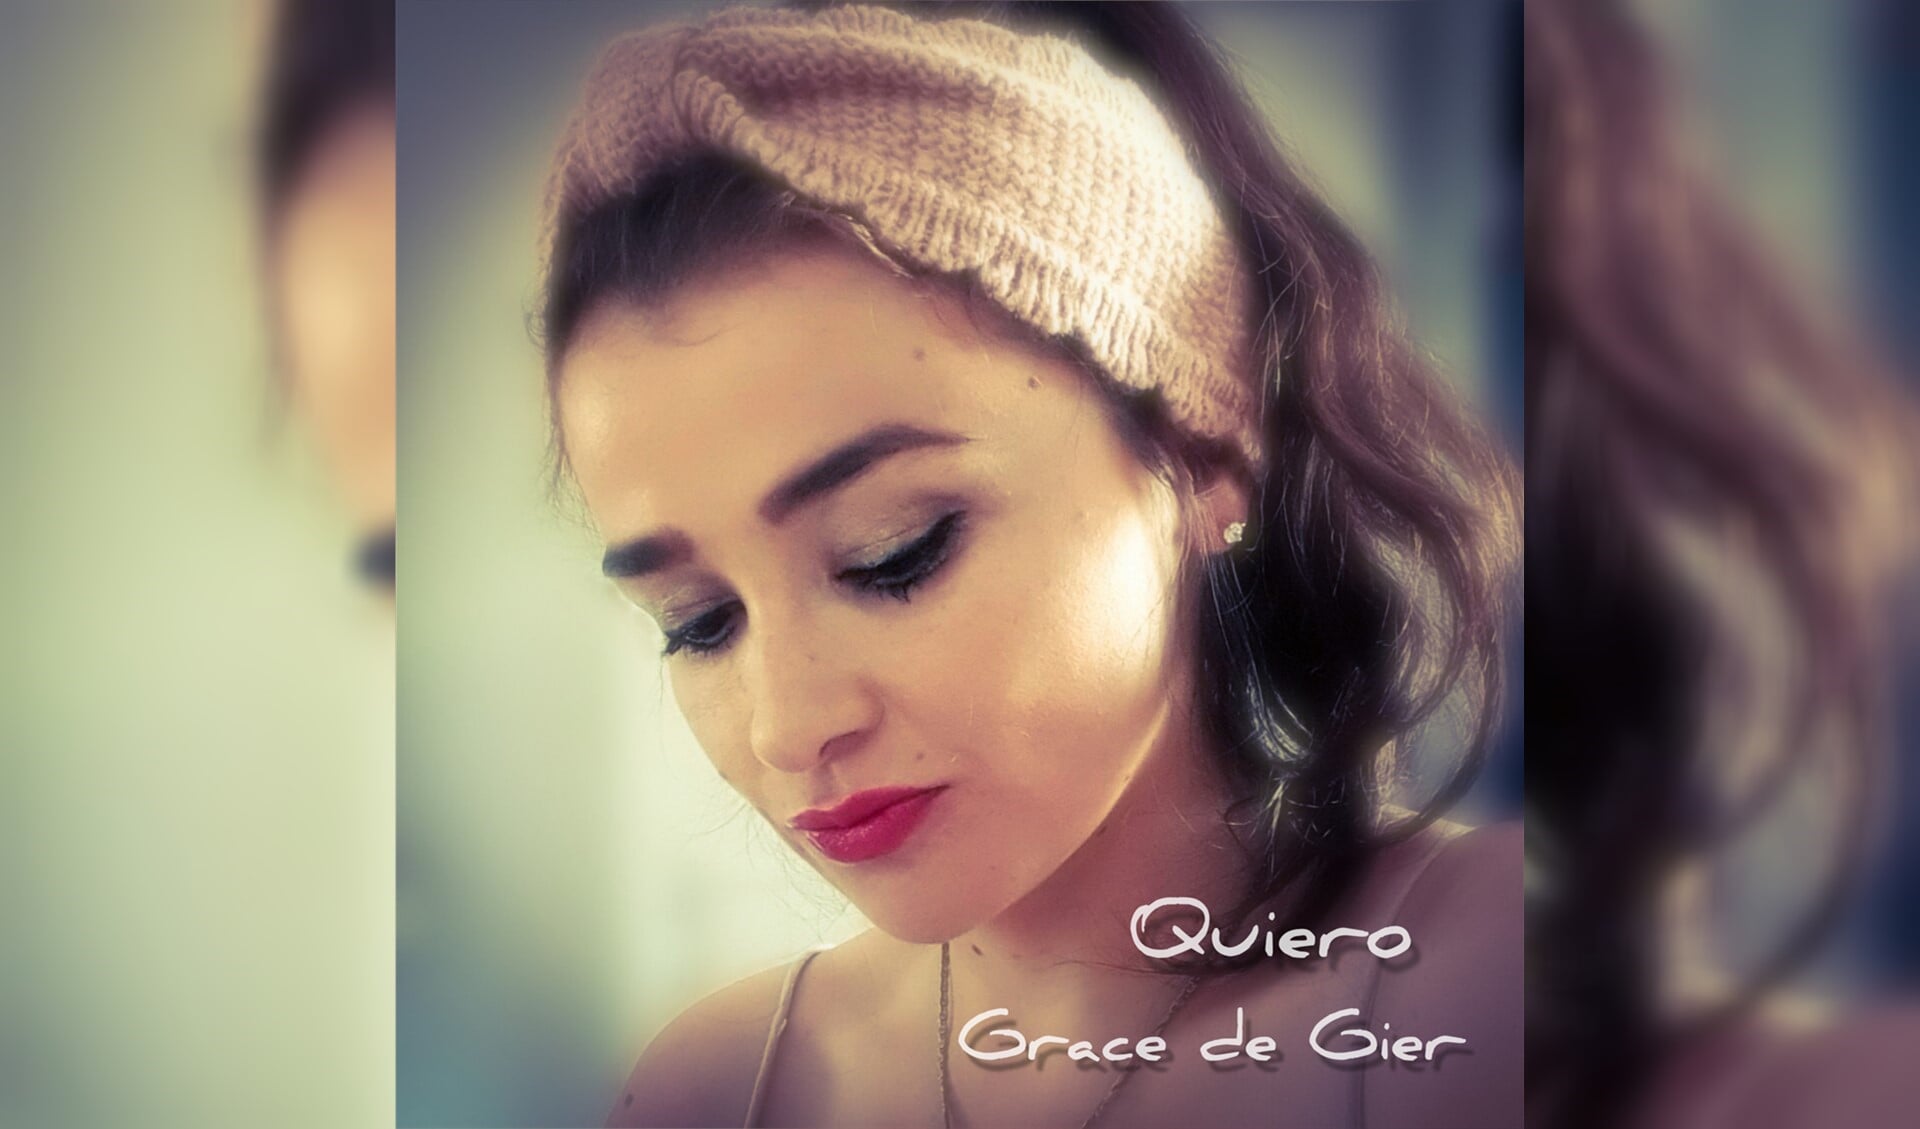 Grace de Gier is een Colombiaanse rock- en popzangeres/songwriter. Ze zingt in het Spaans en woont nu in Nederland. 